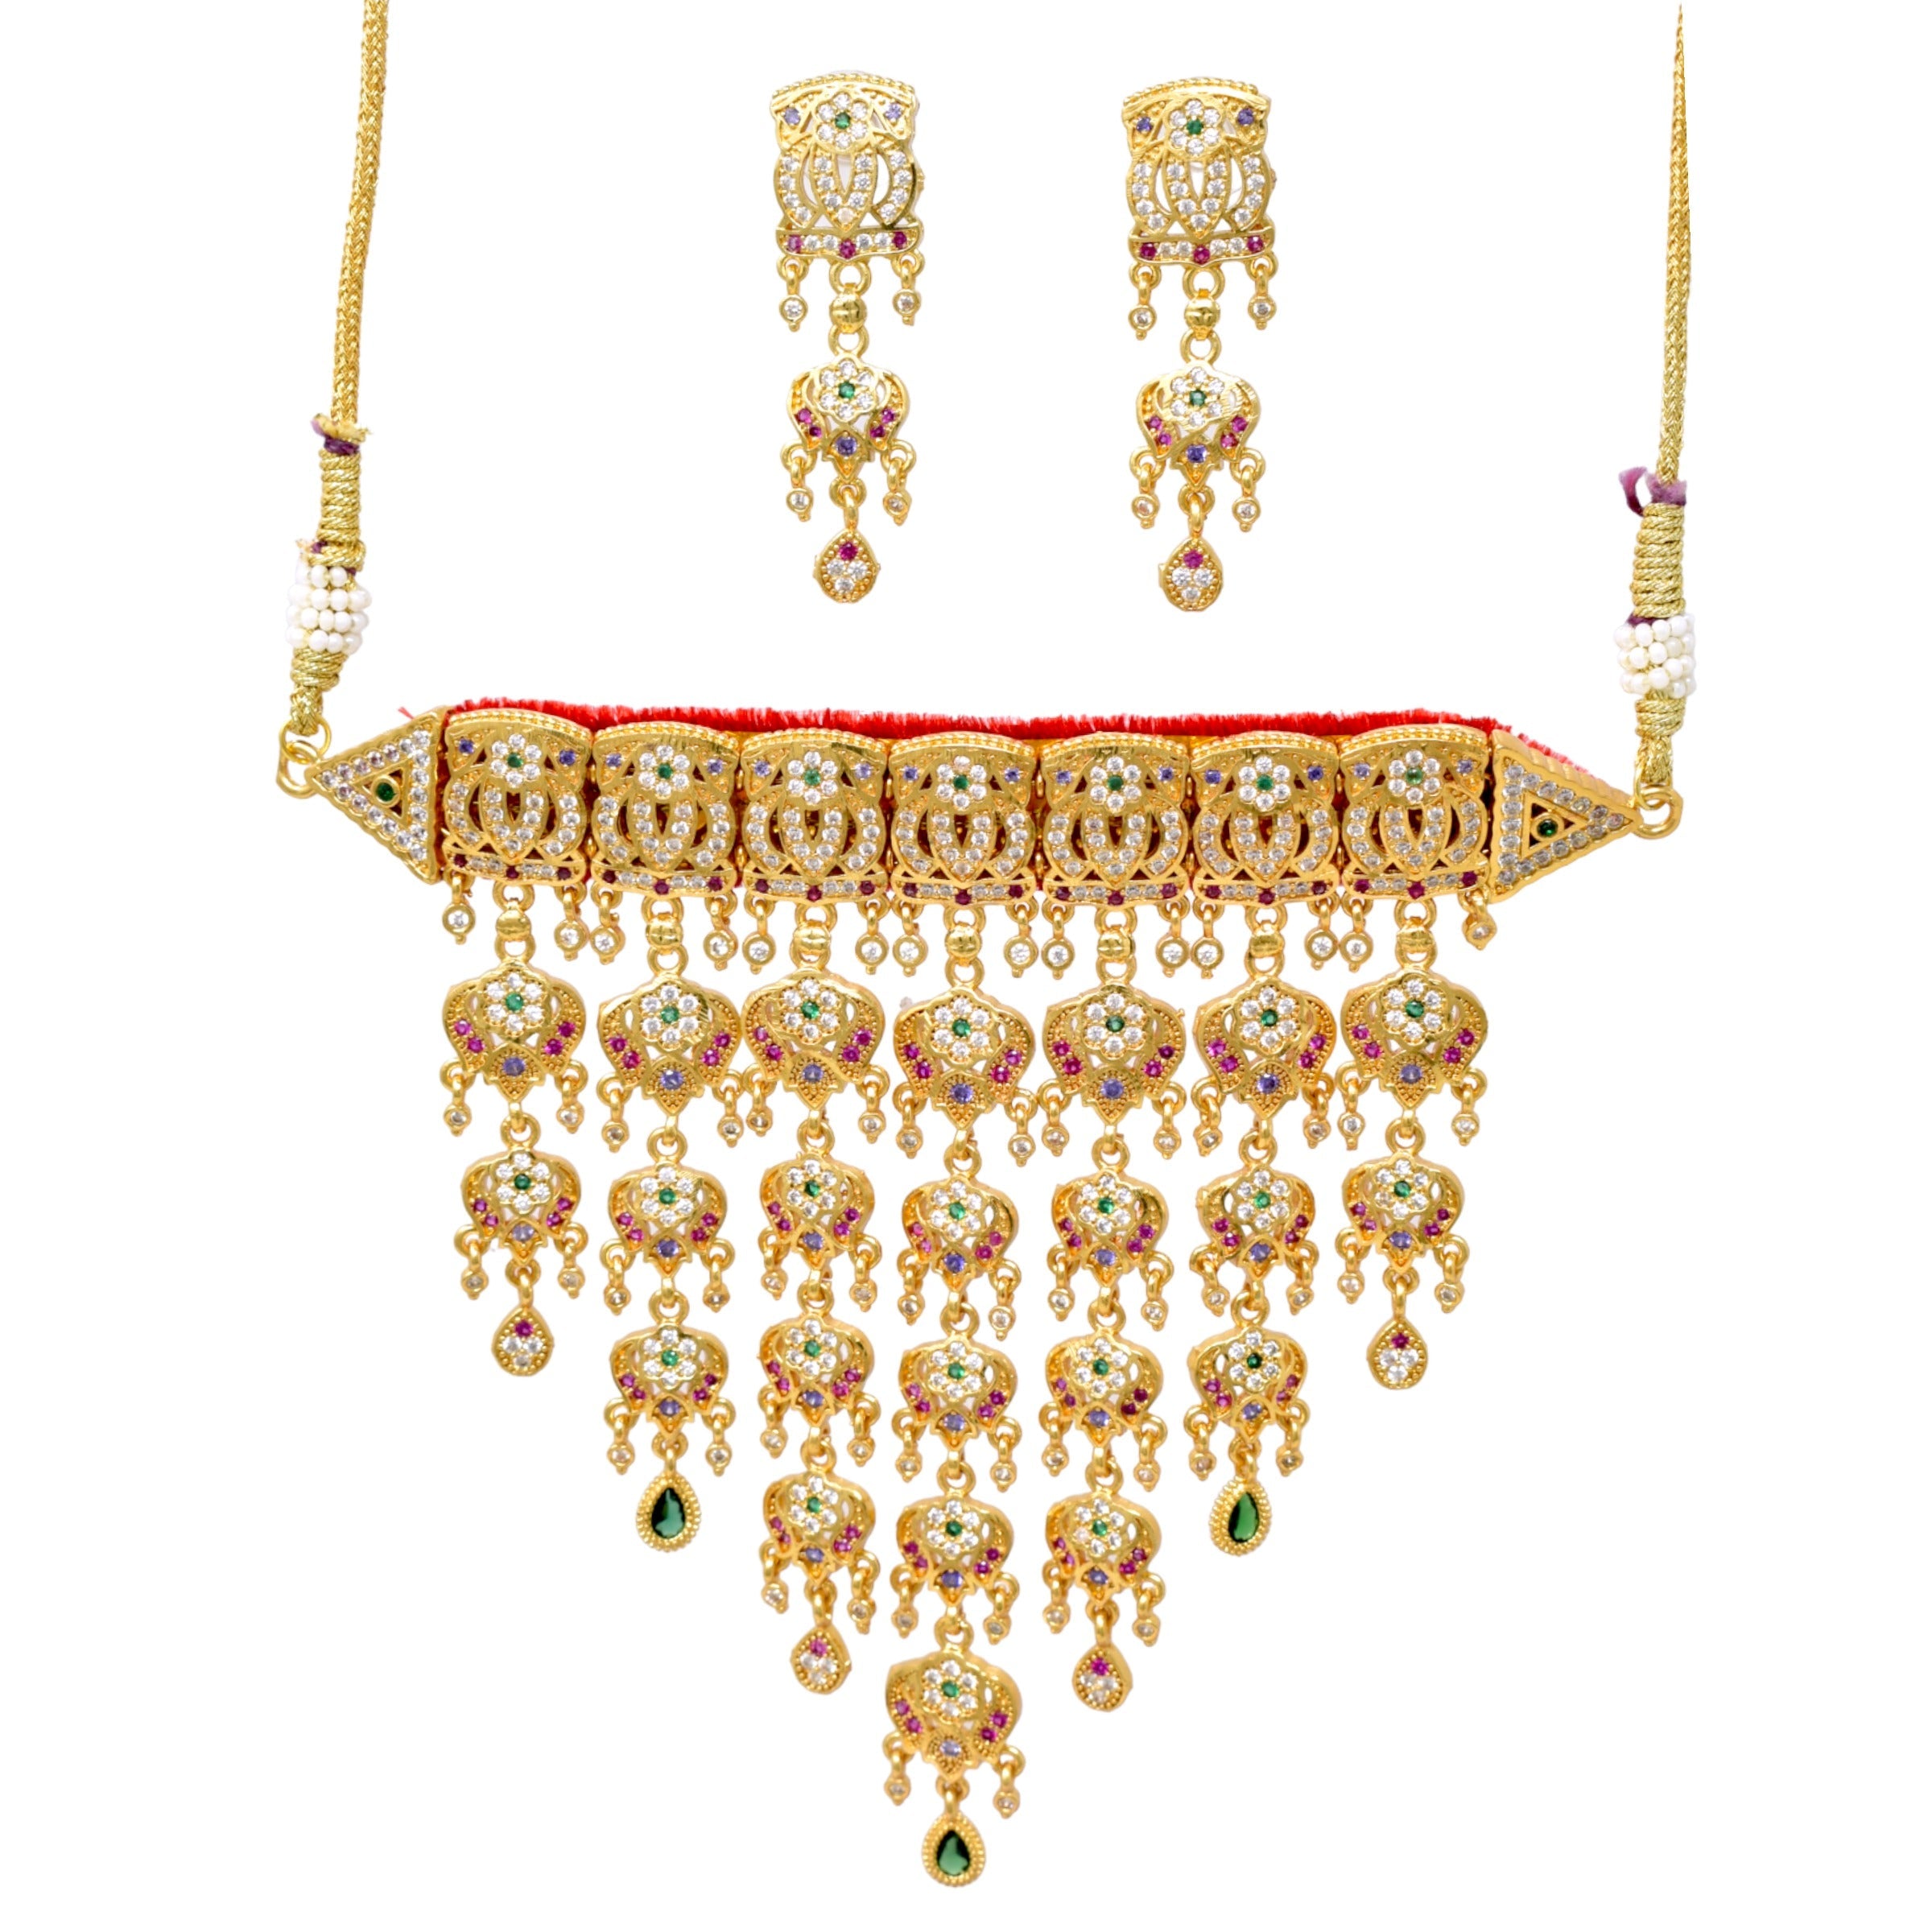 Rajasthani aad design